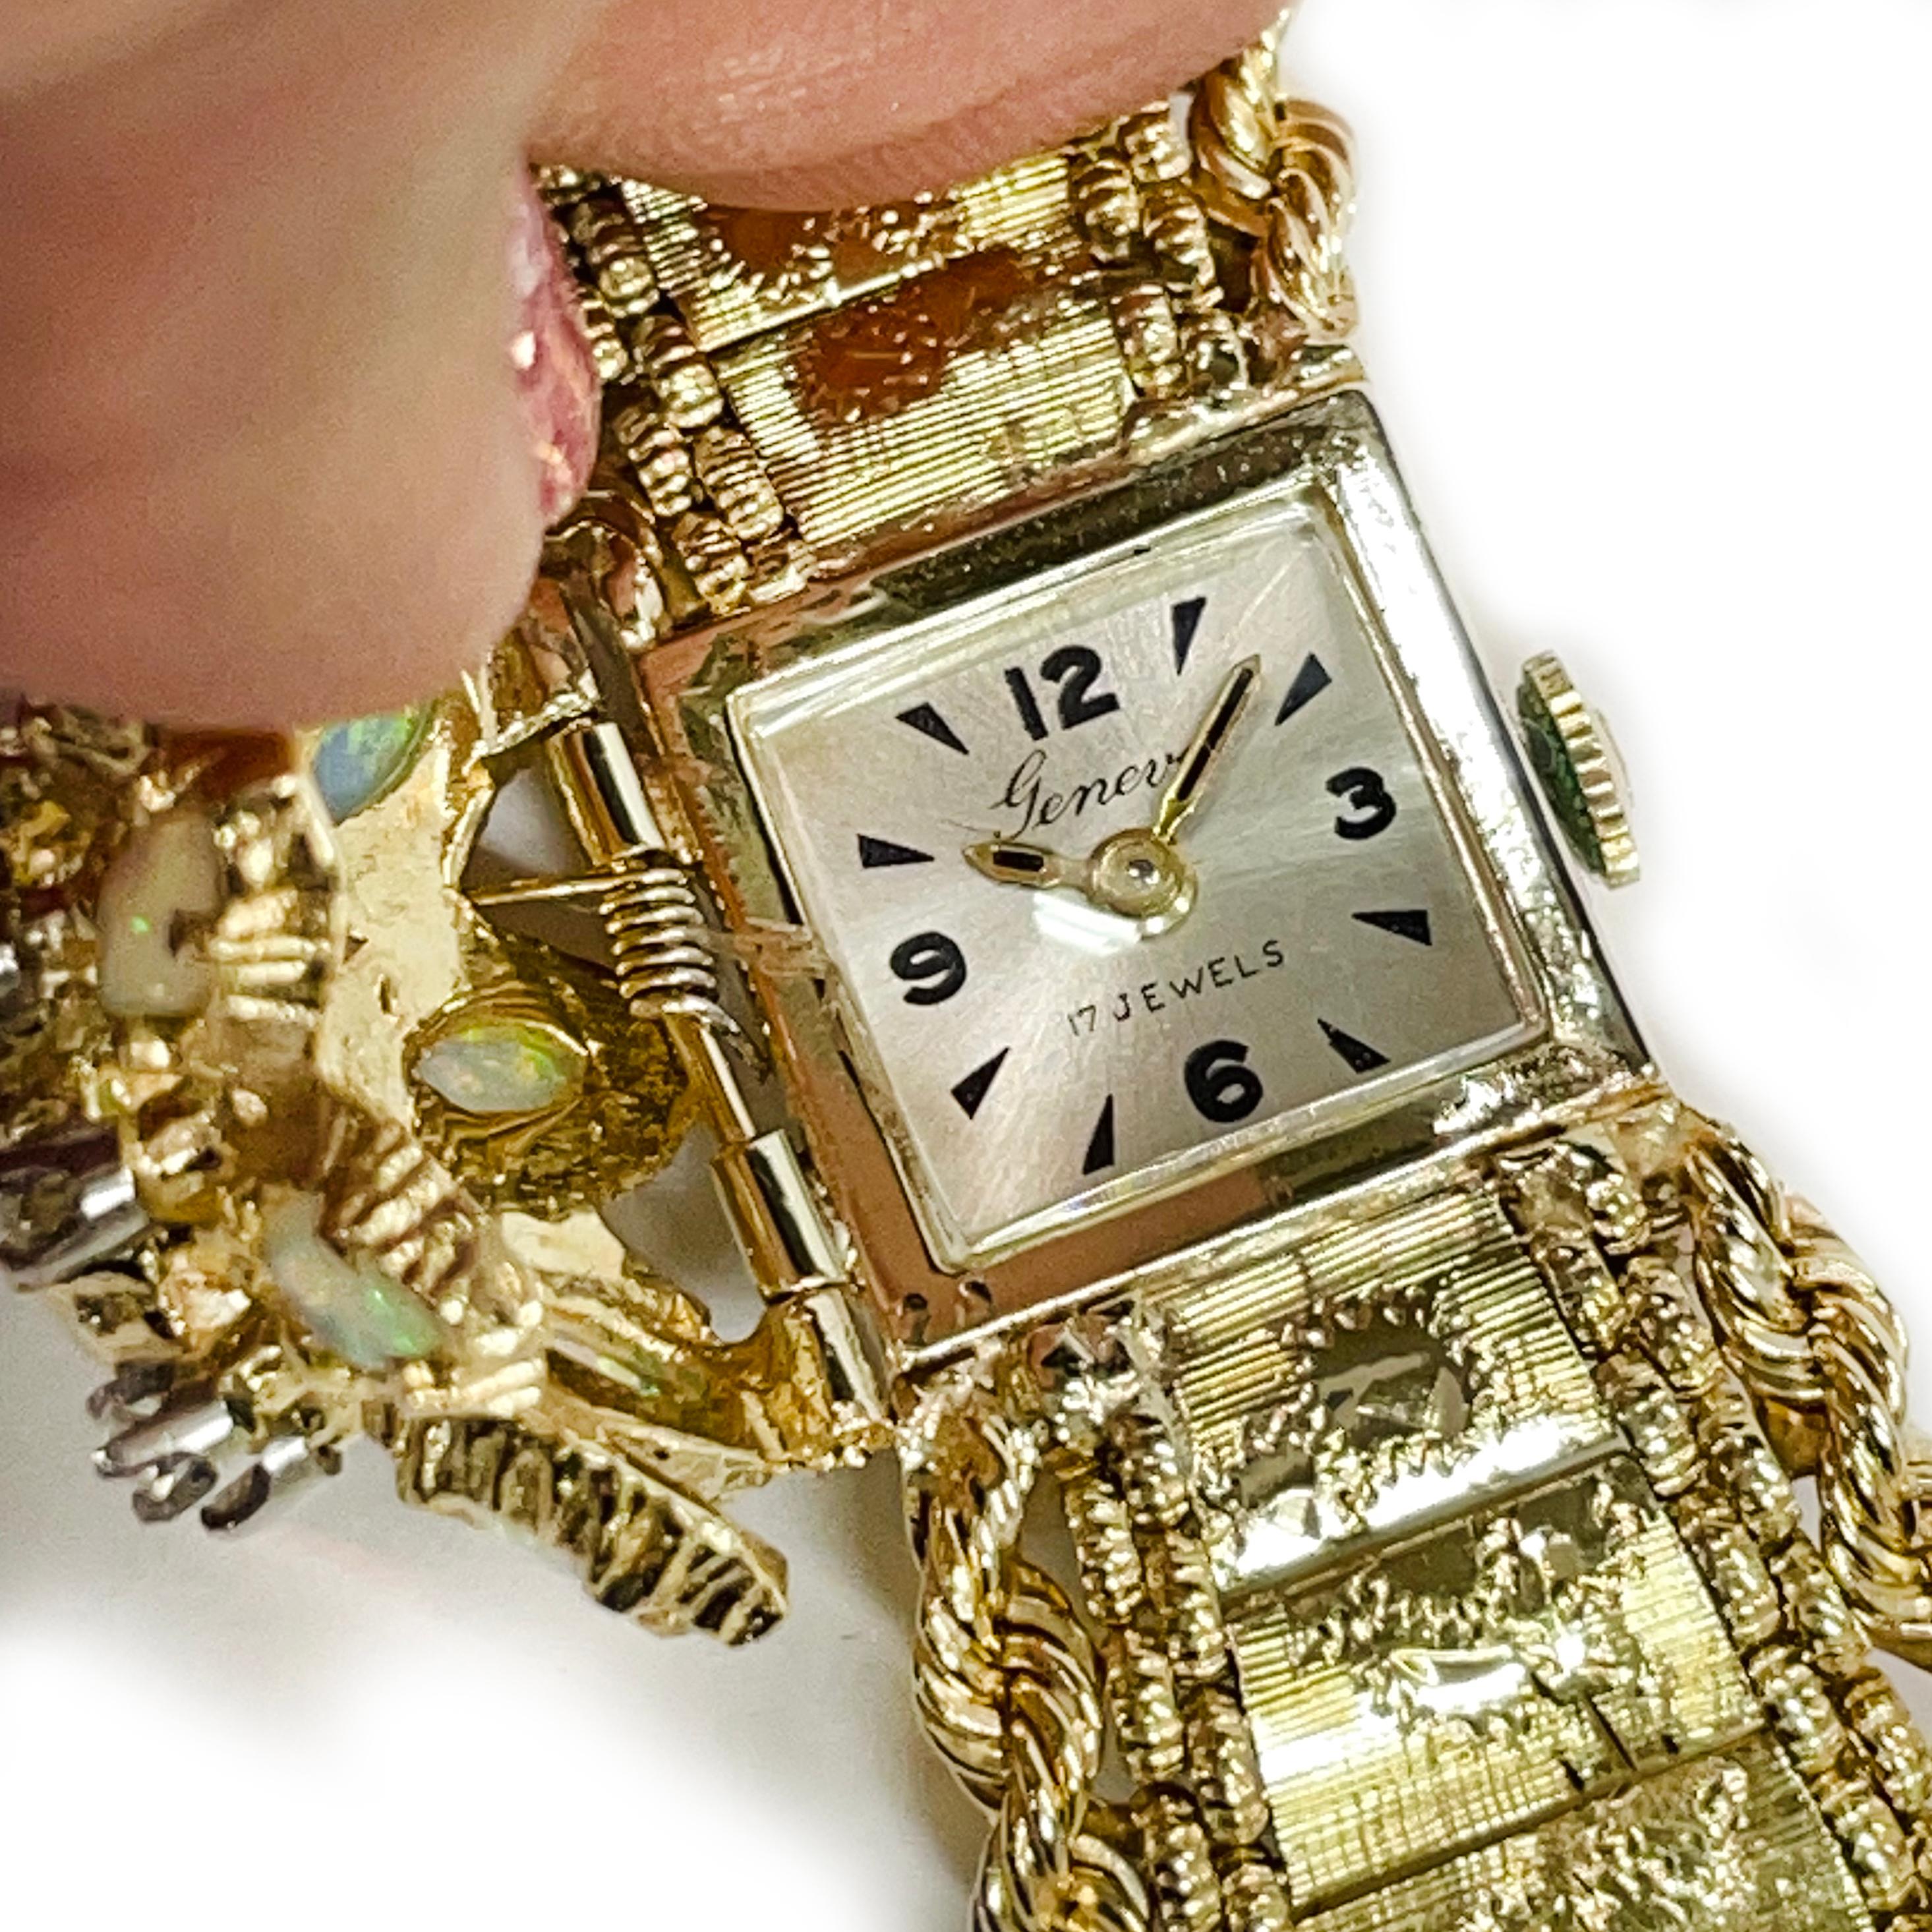 Genf 14 Karat Gelbgold 17 Jewels Opal Diamant Armbanduhr. Diese exquisite Uhr verfügt über einen Klappdeckel mit marquisen Opalsteinen und runden Diamanten. Es gibt acht Marquise von 5,5 x 3,0 mm und einen marquisen Opal in der Mitte von 8,0 x 4,0